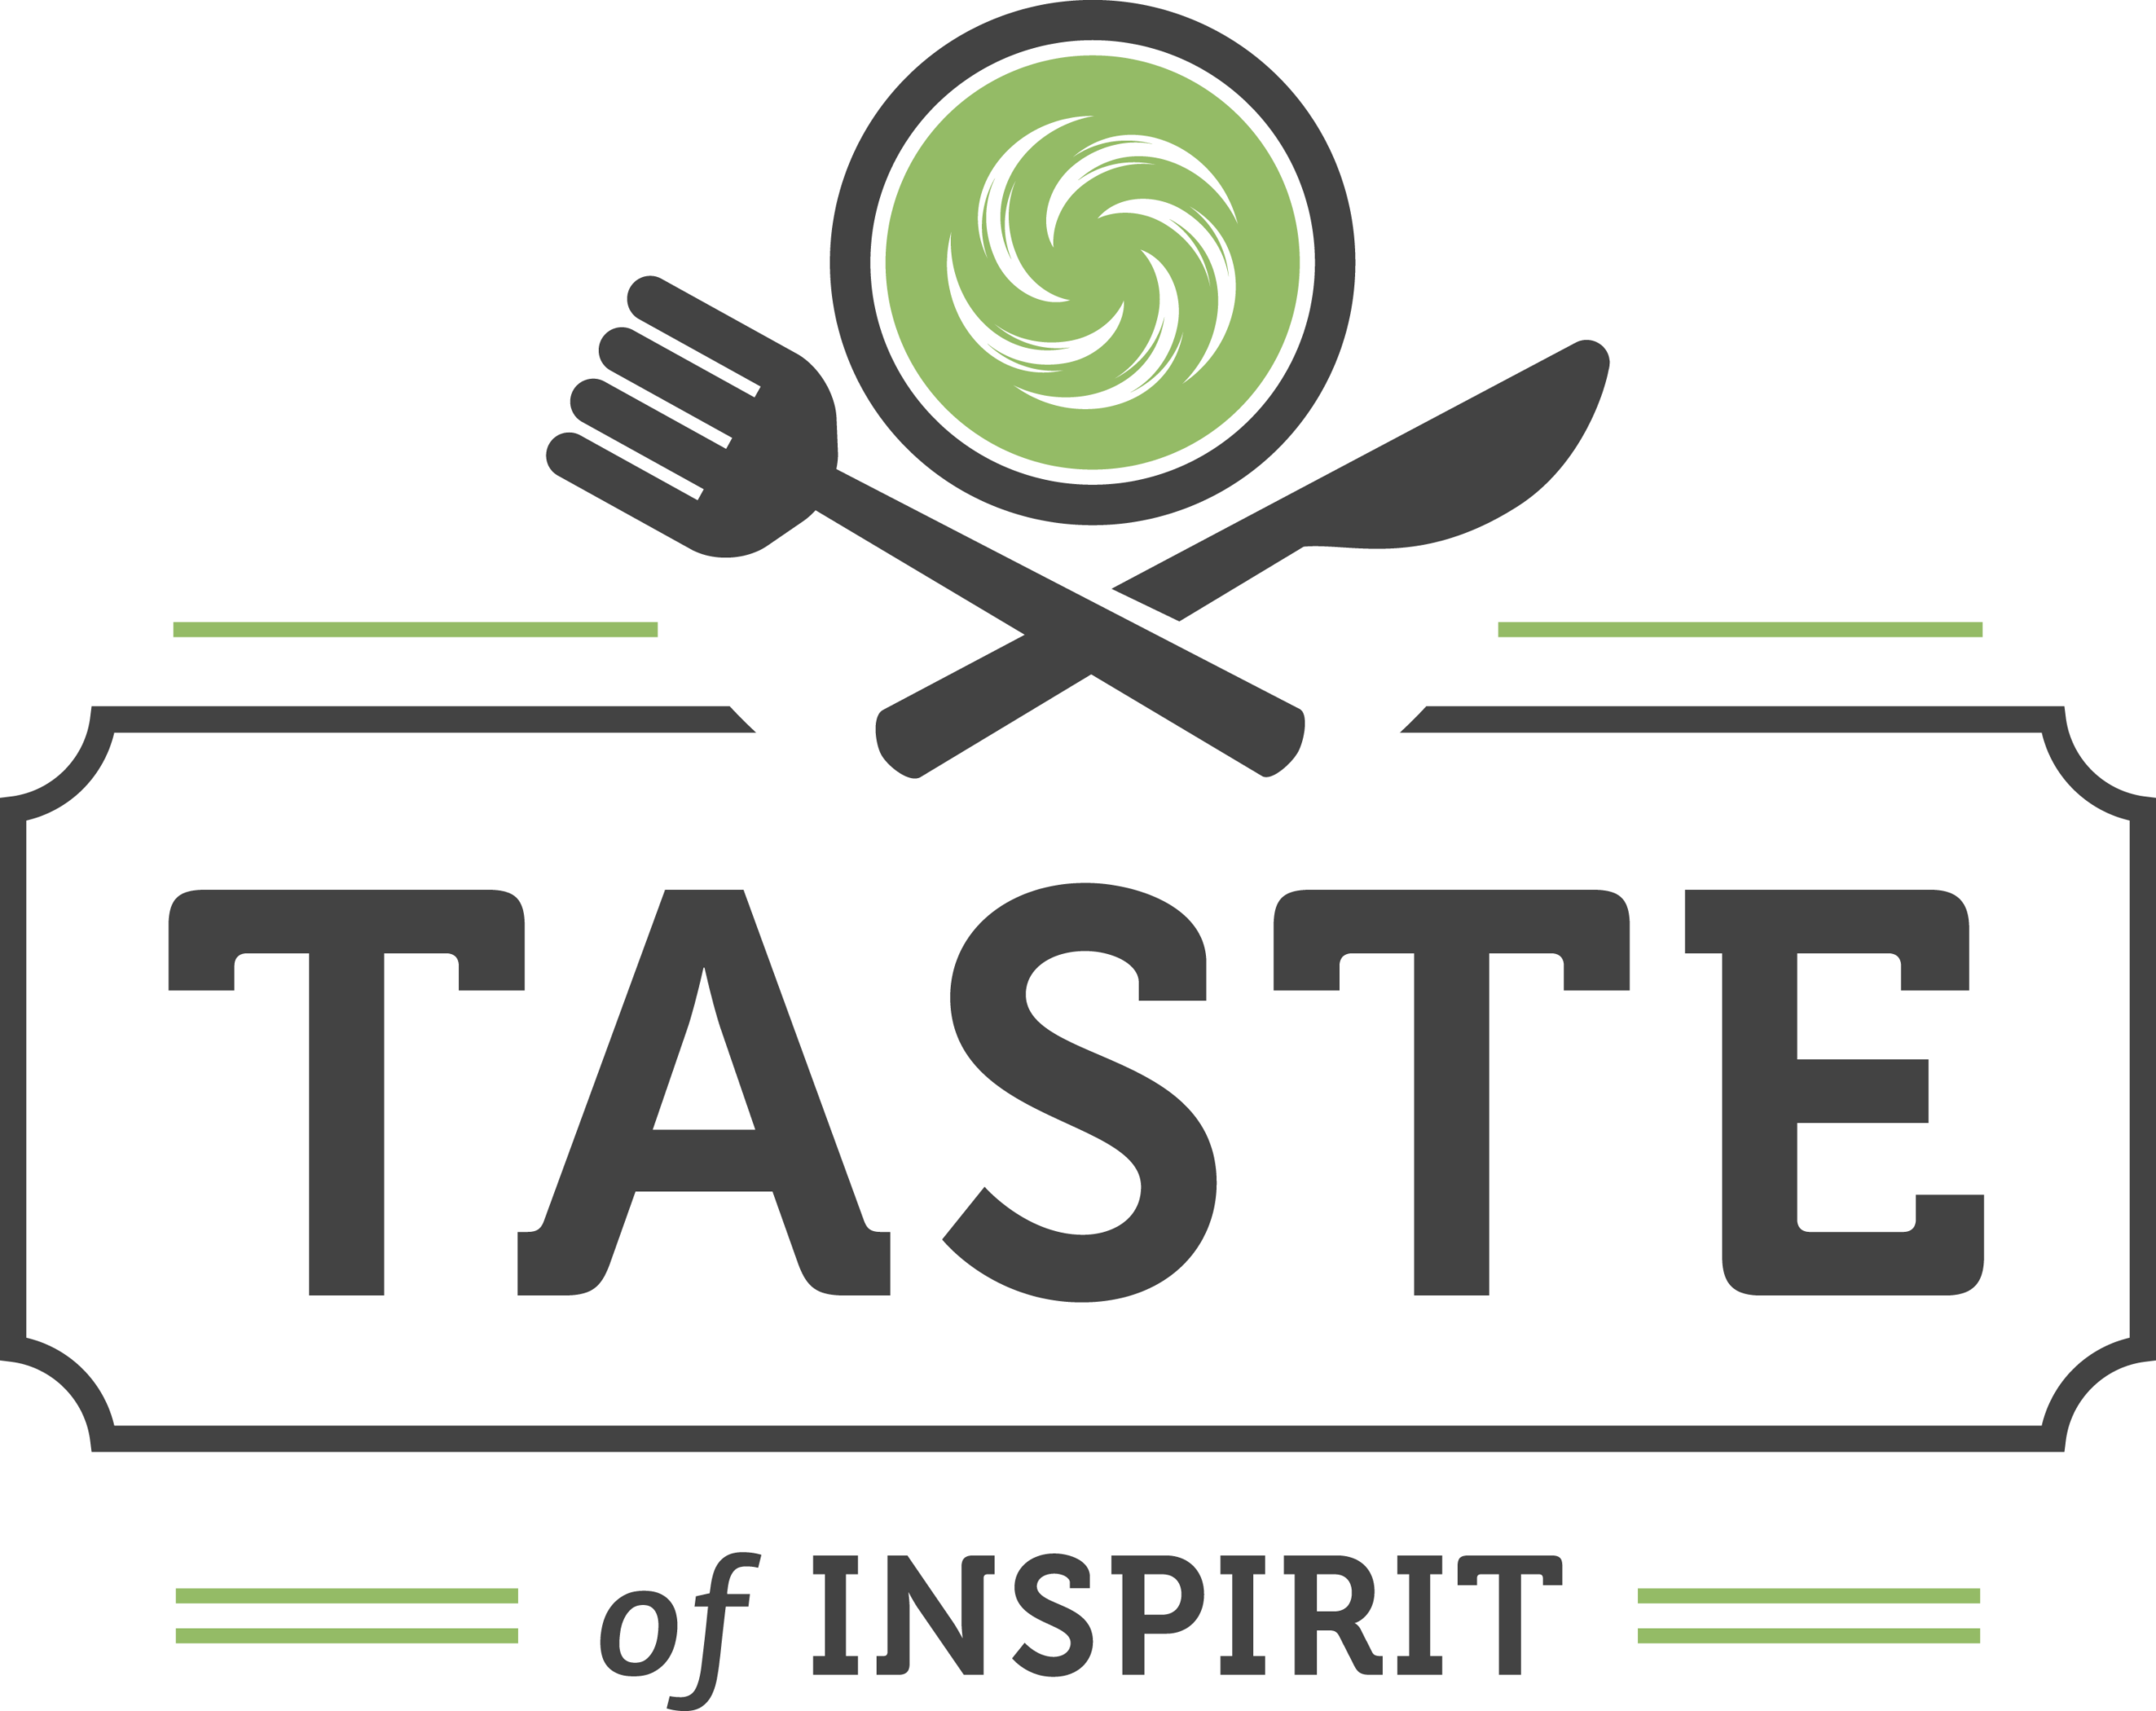 Taste of Inspirit 5